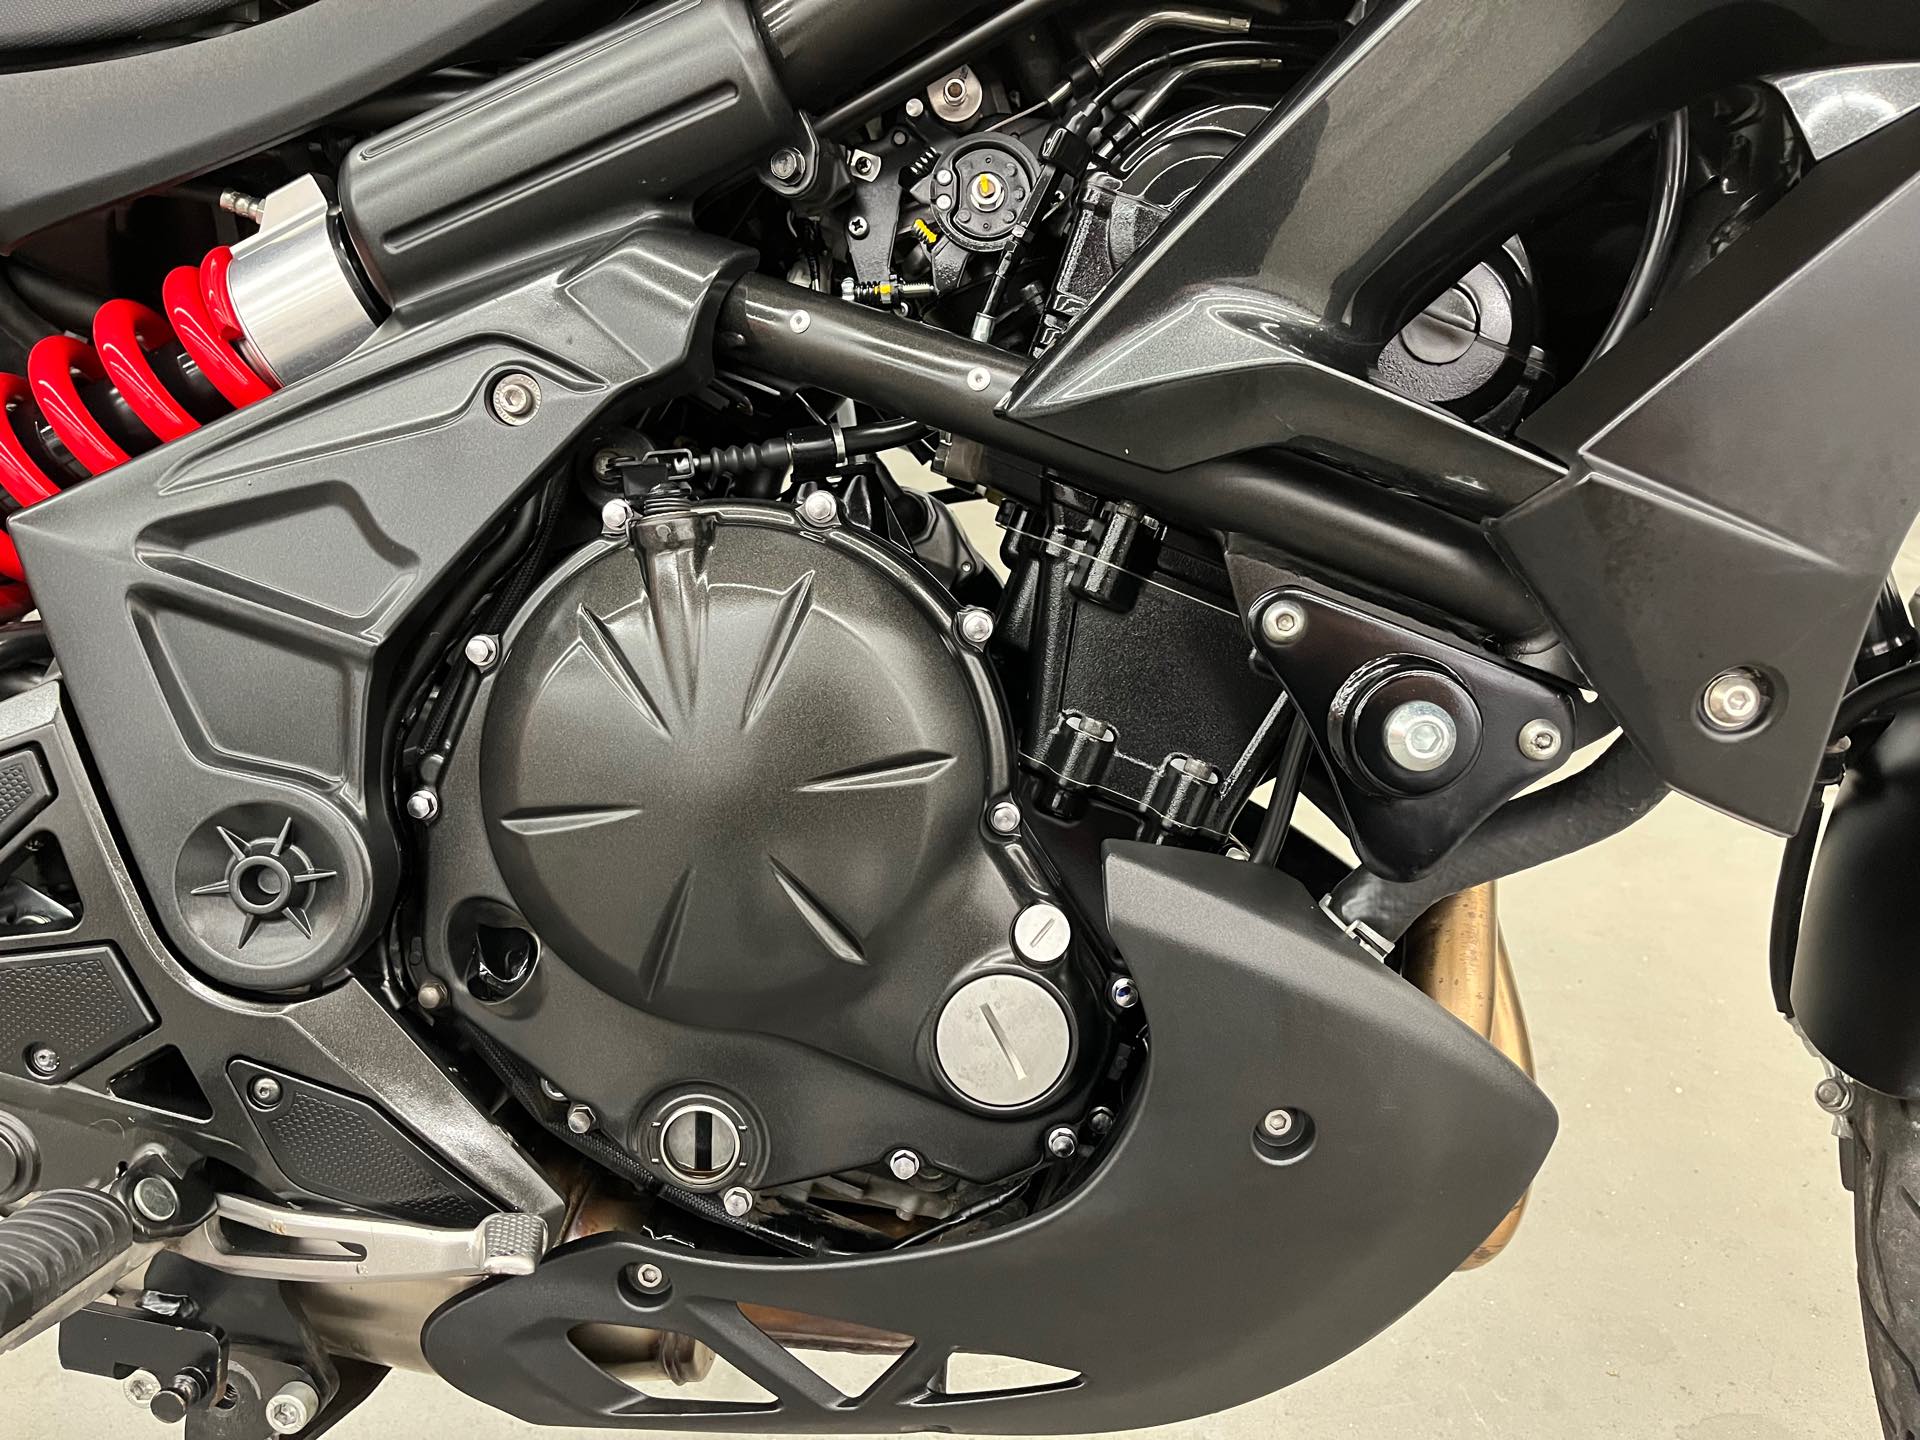 2018 Kawasaki Versys 650 ABS at Aces Motorcycles - Denver